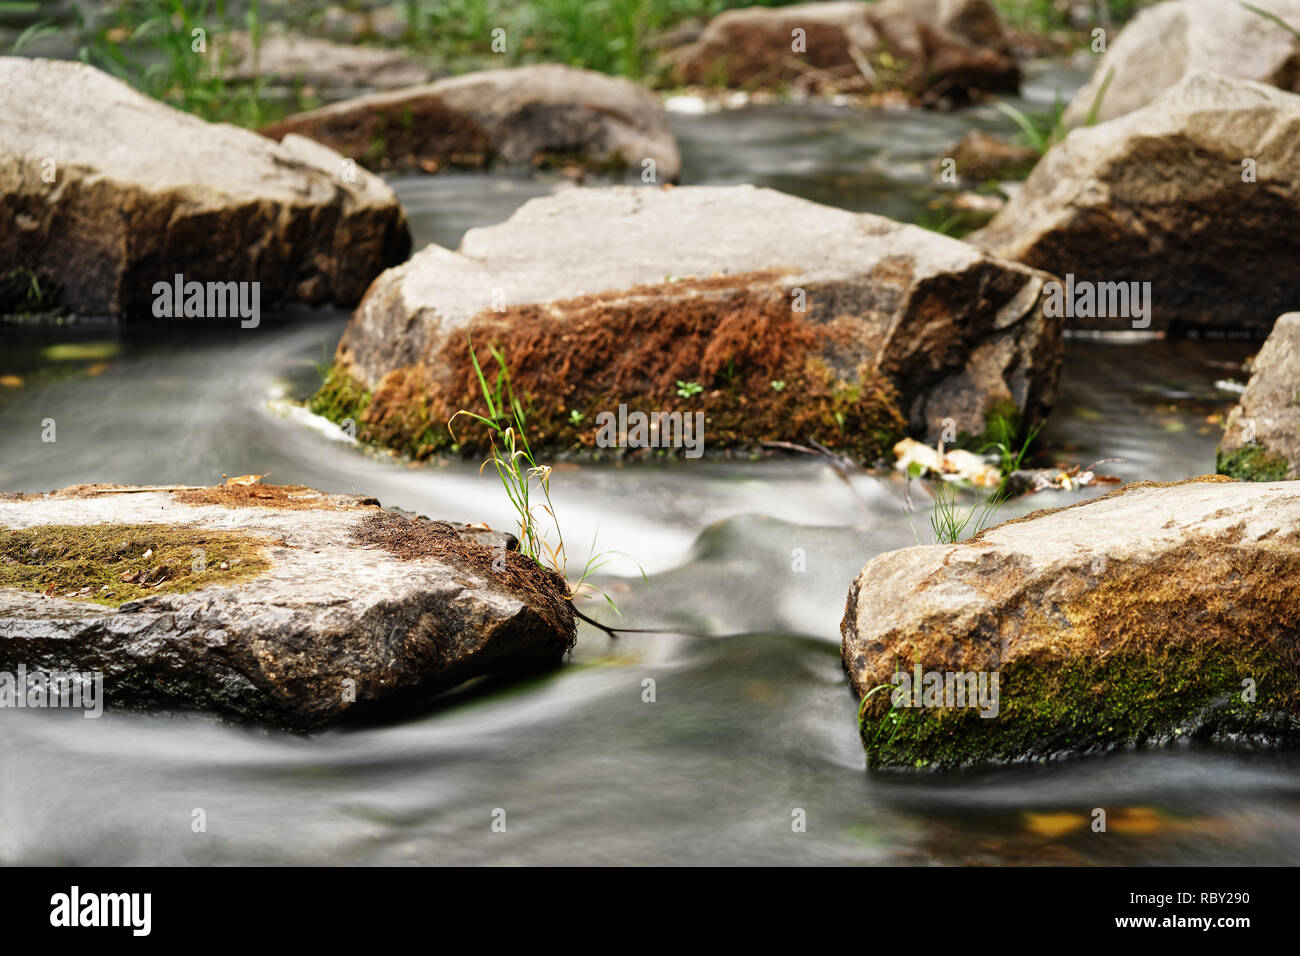 Detailansicht des fließenden Wasser eines kleinen Flusses, das Wasser fließt, Steine mit Moos und einzelne Büschel Gras bedeckt, schmale schärfen Zone, flowi Stockfoto